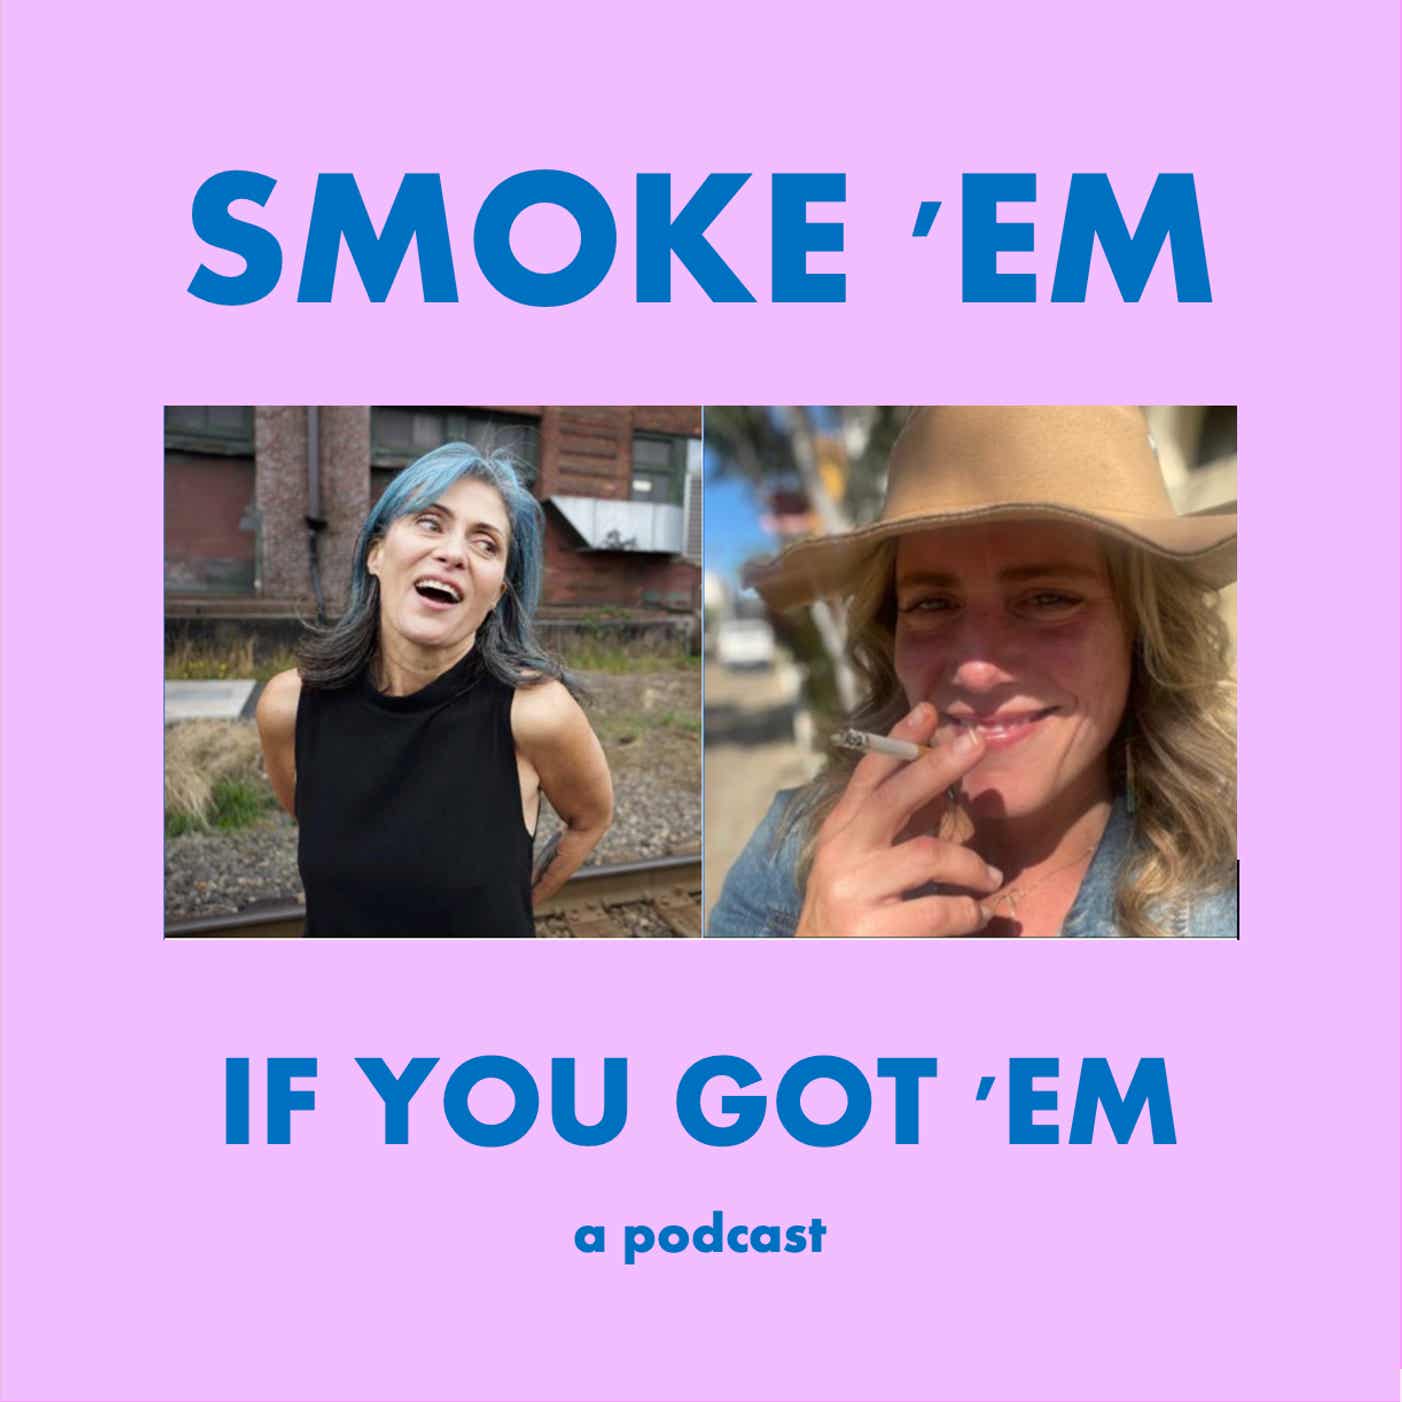 Smoke 'Em If You Got 'Em Podcast (private feed for kwormond@protonmail.com)